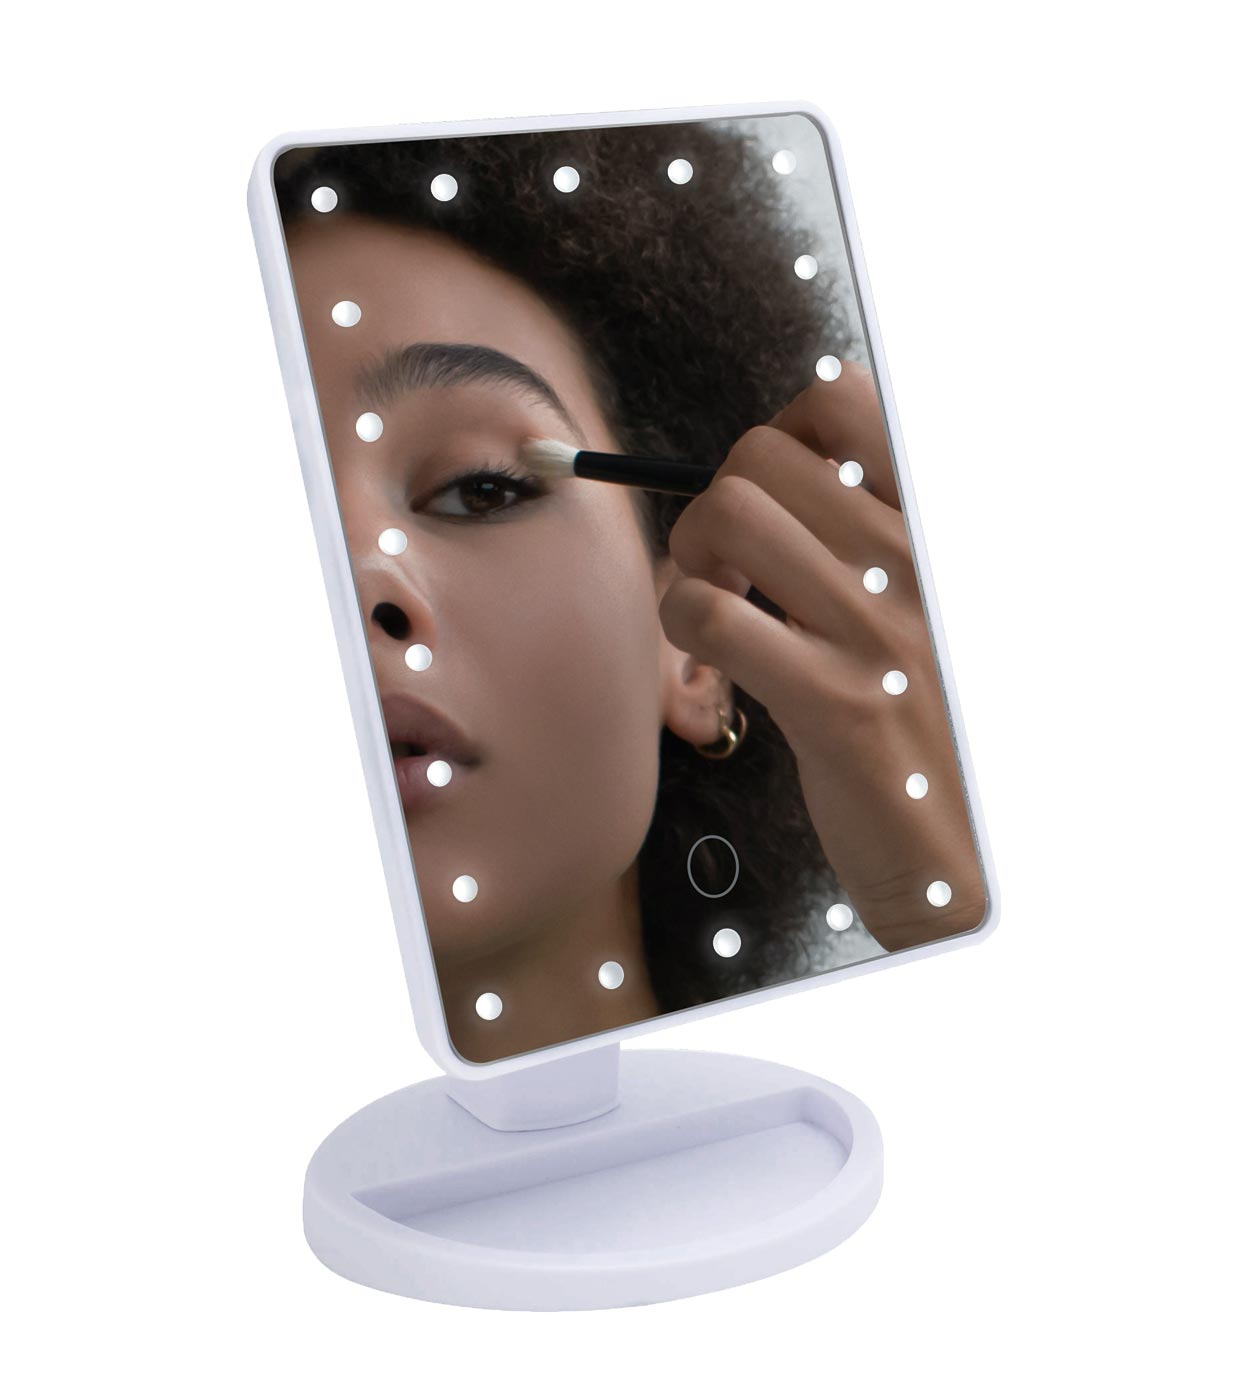 Espelho de Maquilhagem com Iluminação 22 LEDs